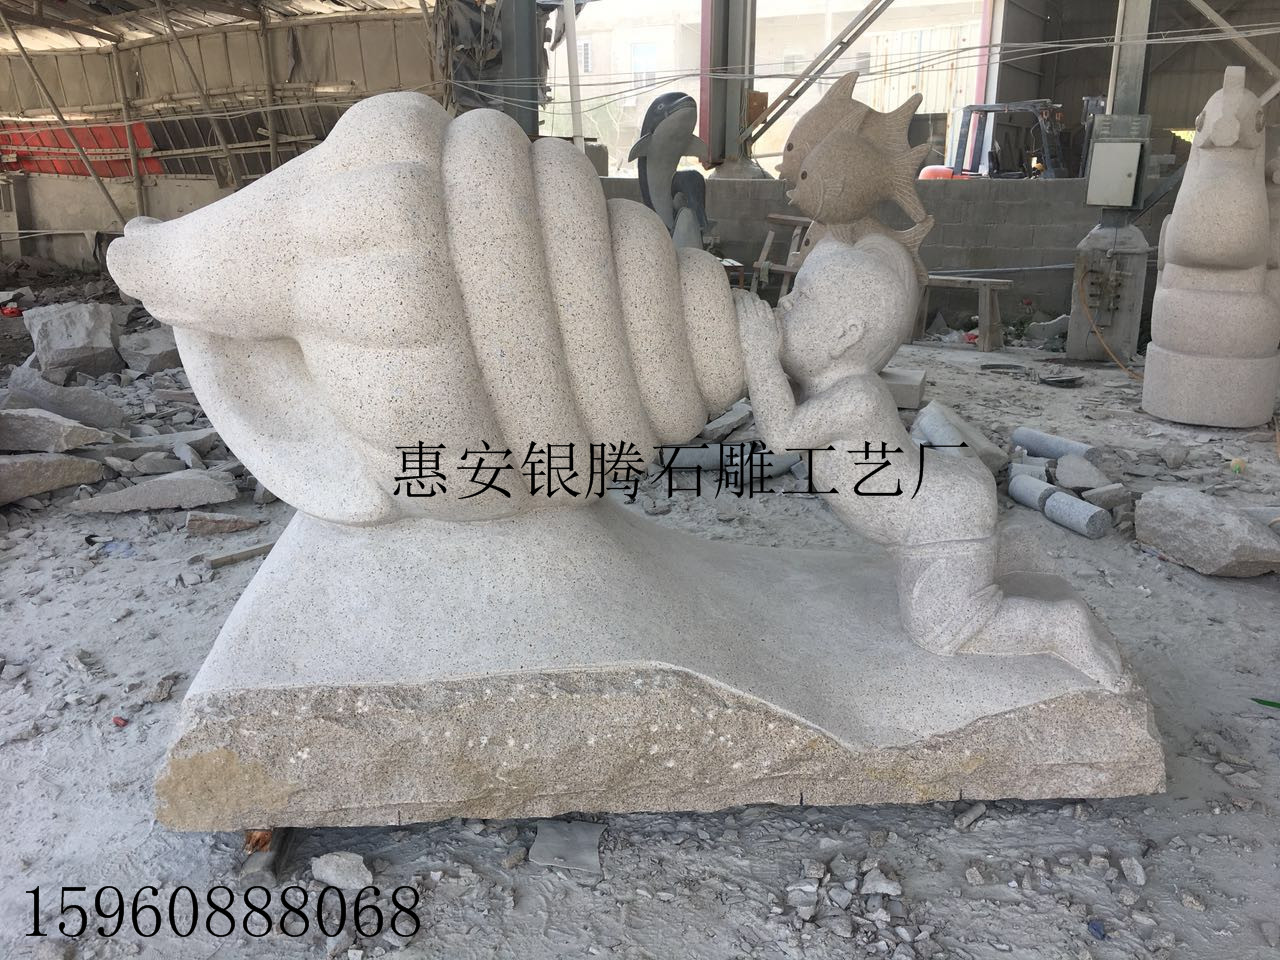 石雕海螺童子 厂家直销花岗岩黄锈石雕刻 园林景观雕塑